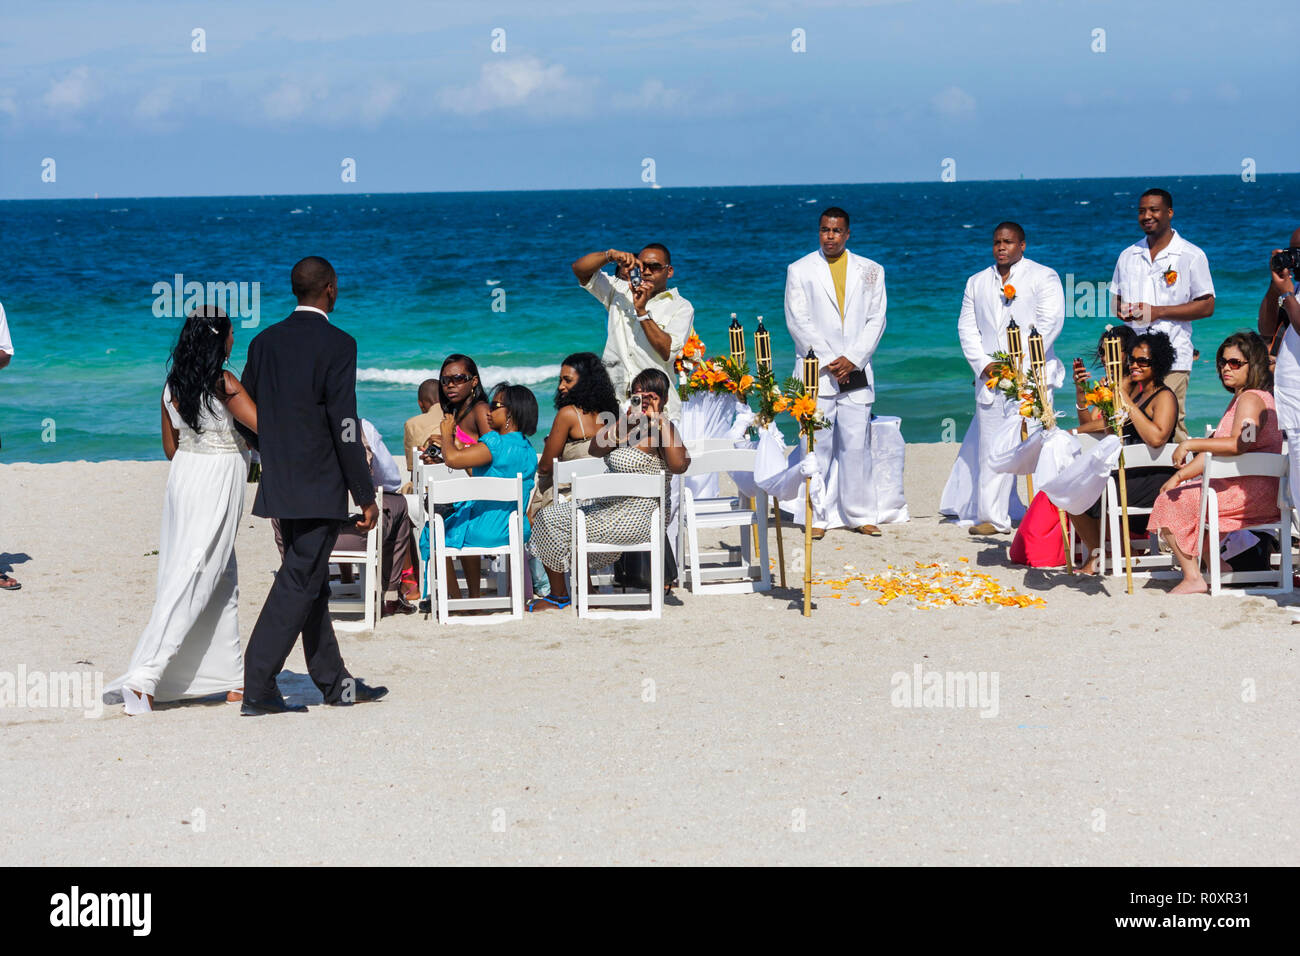 Miami Beach Floride, Océan Atlantique, eau, plage publique, bord de mer, mariage de destination, cérémonie, homme noir hommes, femme femmes, couple, invité, groom, b Banque D'Images